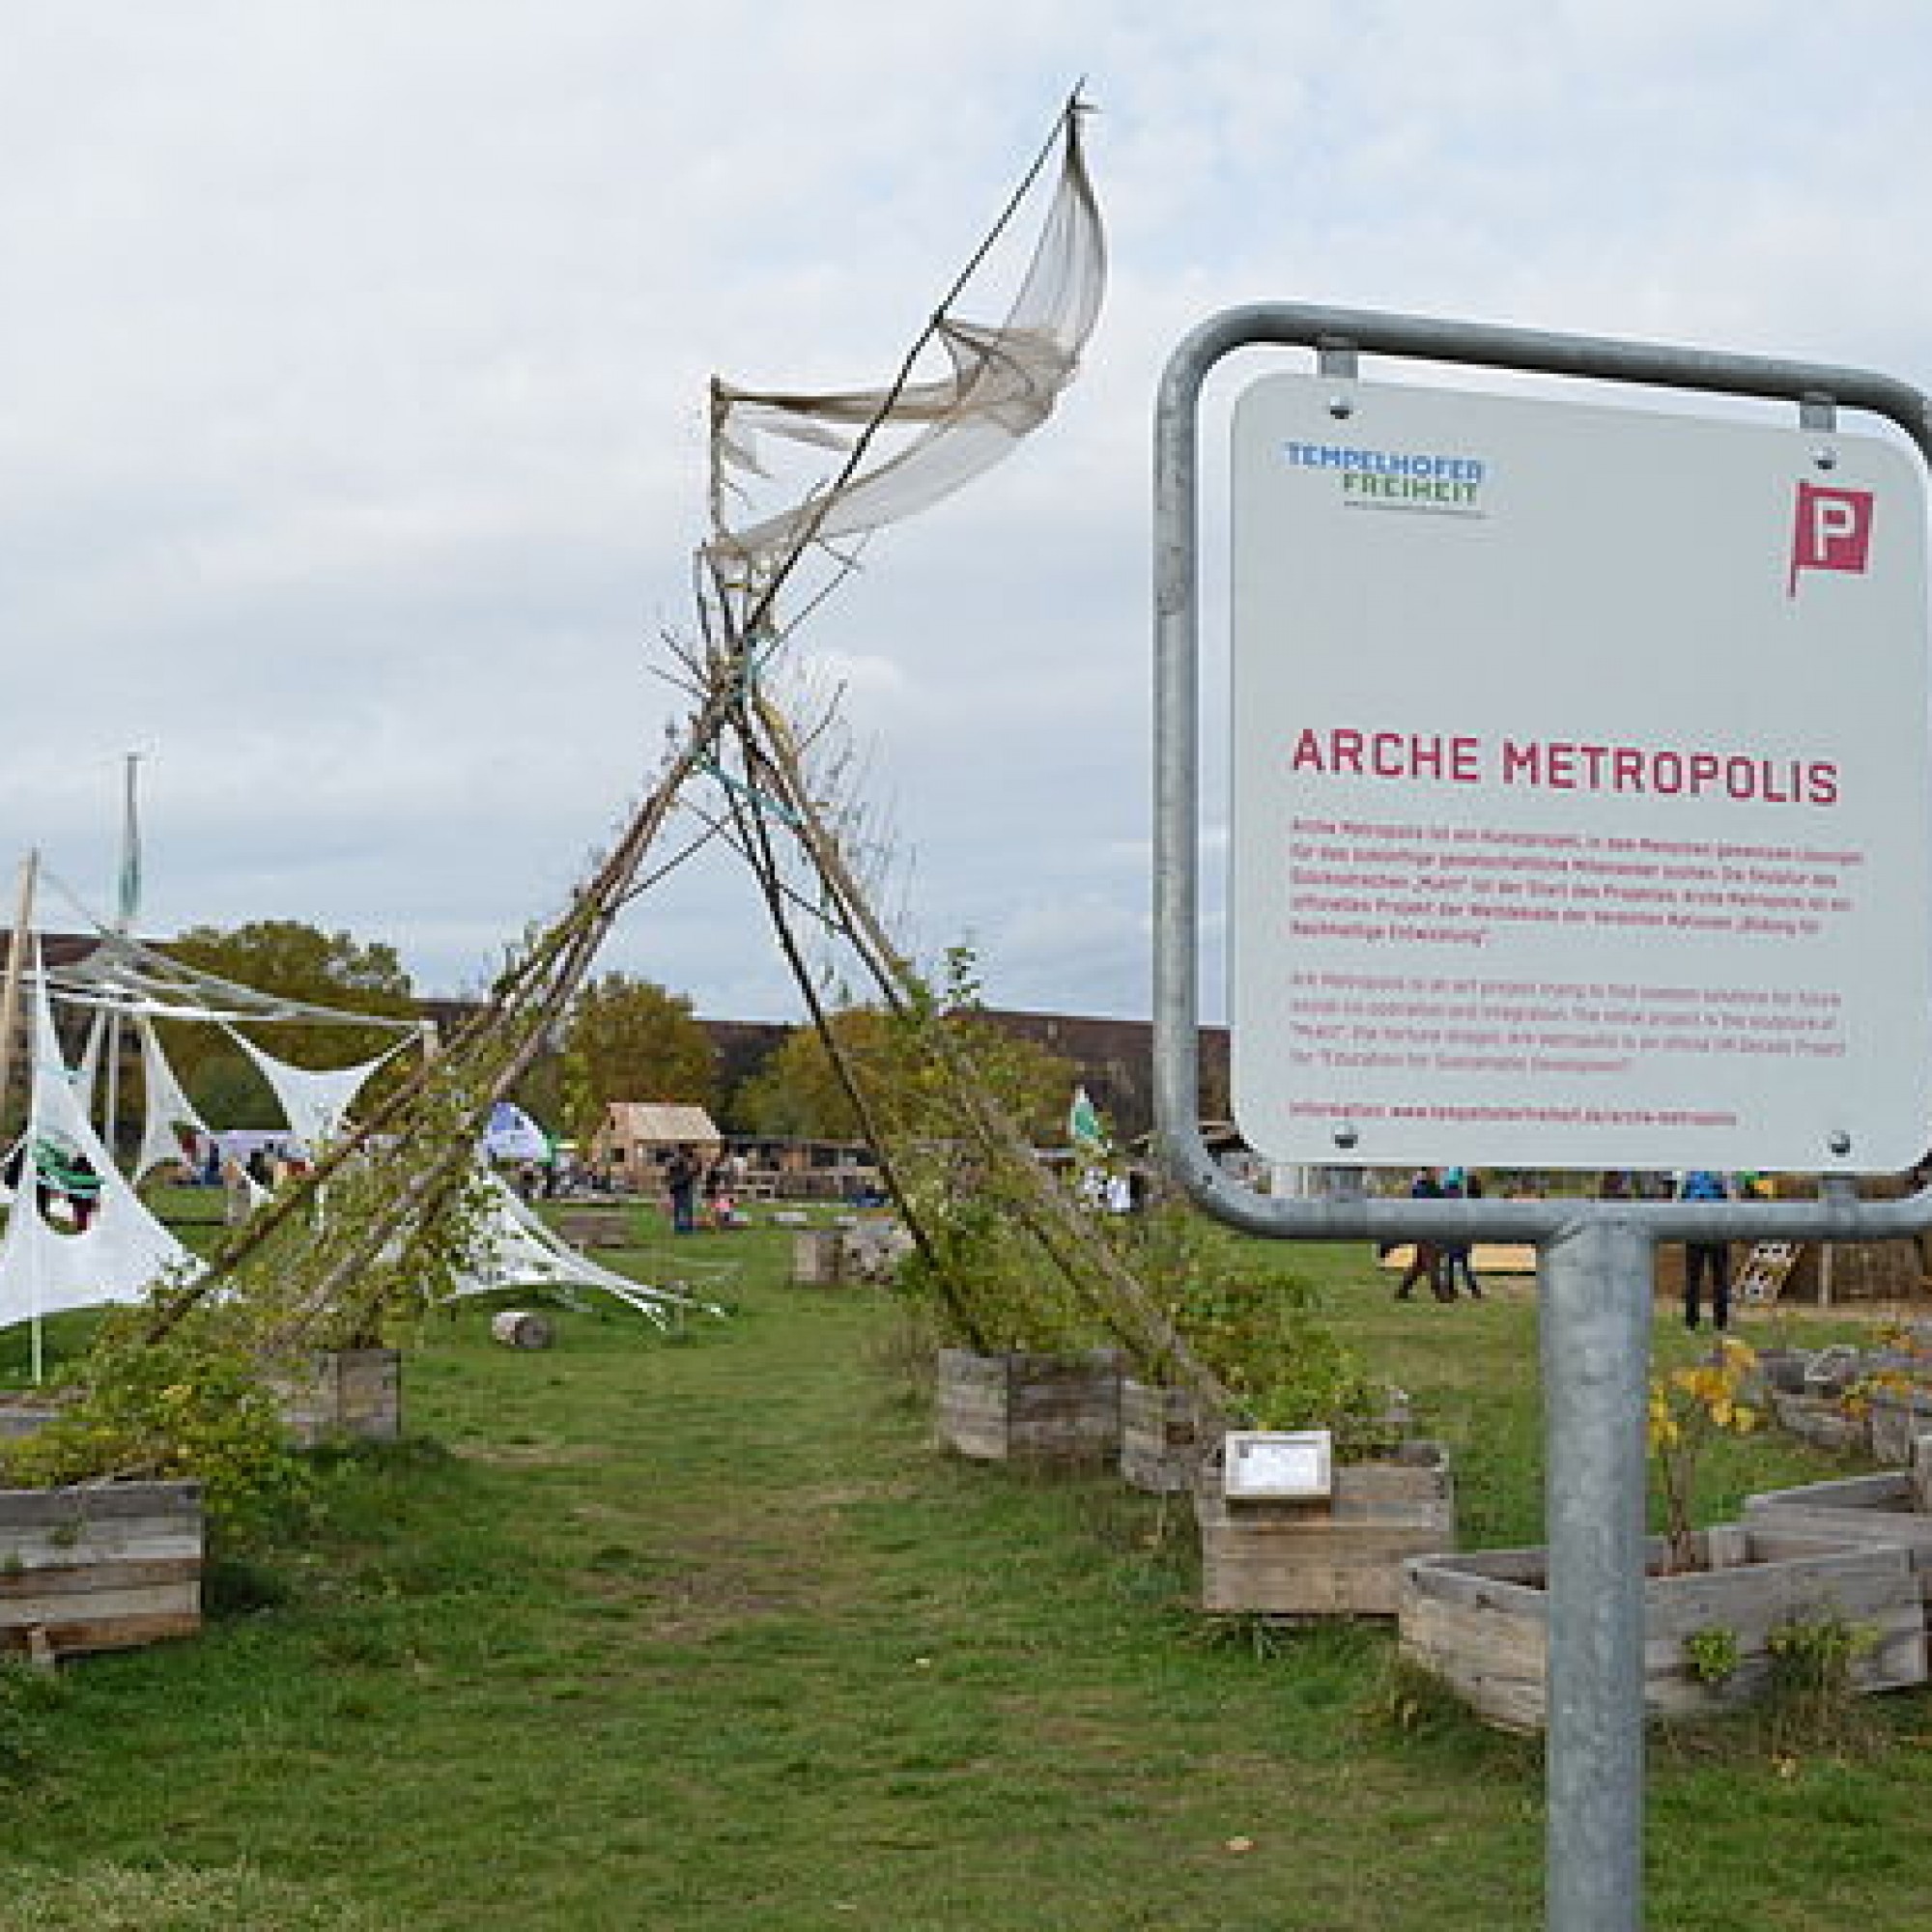 Die Arche Metropolis auf dem Tempelhofer Feld, ein Kunstprojekt, bei dem "Menschen gemeinsame Lösungen für das zukünftige gesellschaftliche Miteinander suchen." (Bild: Britta79, wikimedia, CC))